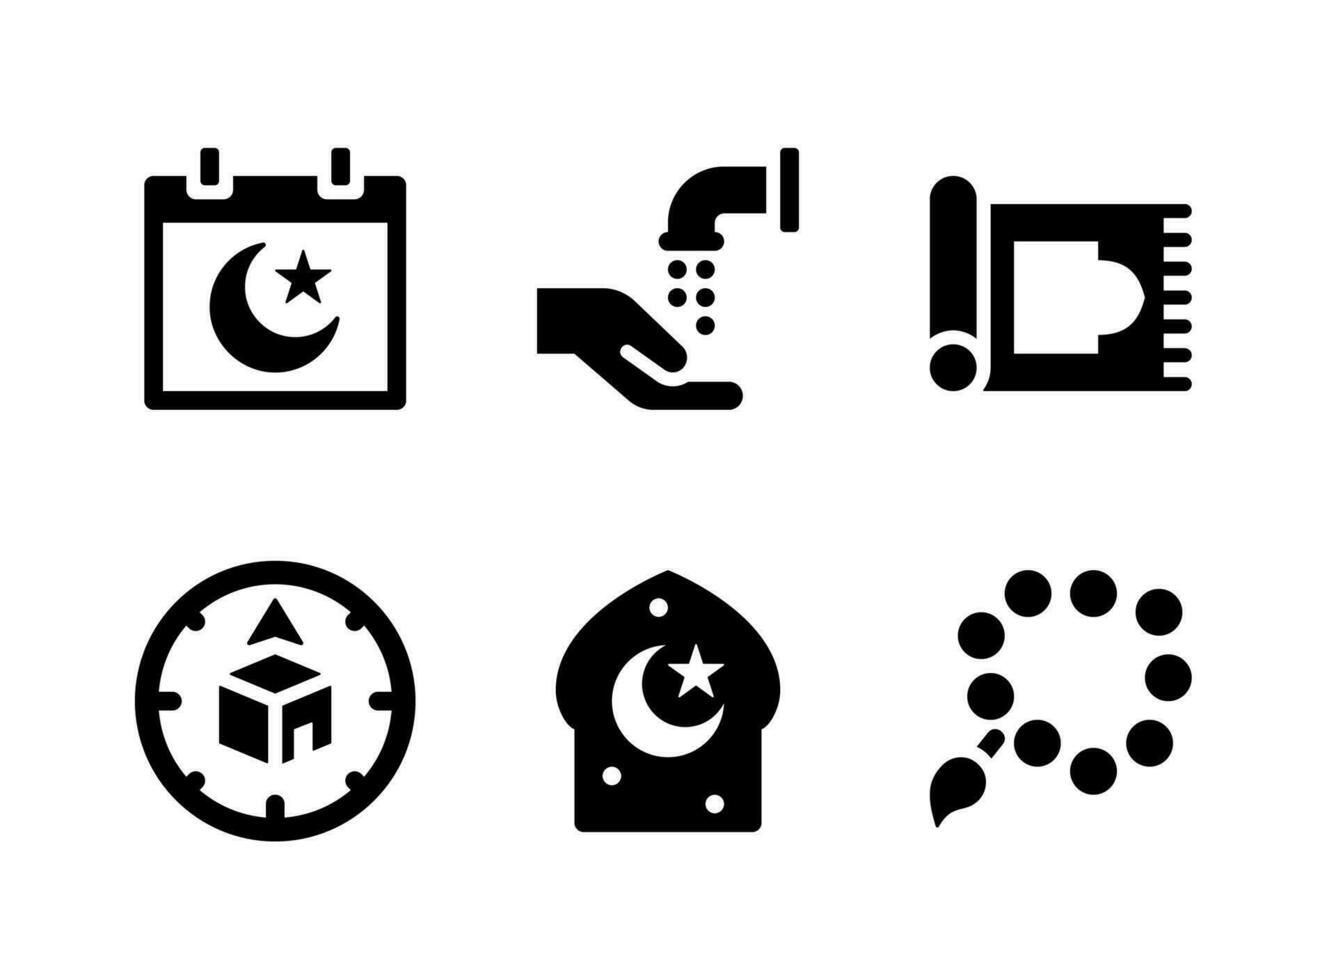 semplice set di icone solide vettoriali relative al ramadan. contiene icone come calendario, abluzioni, tappeto da preghiera e altro ancora.